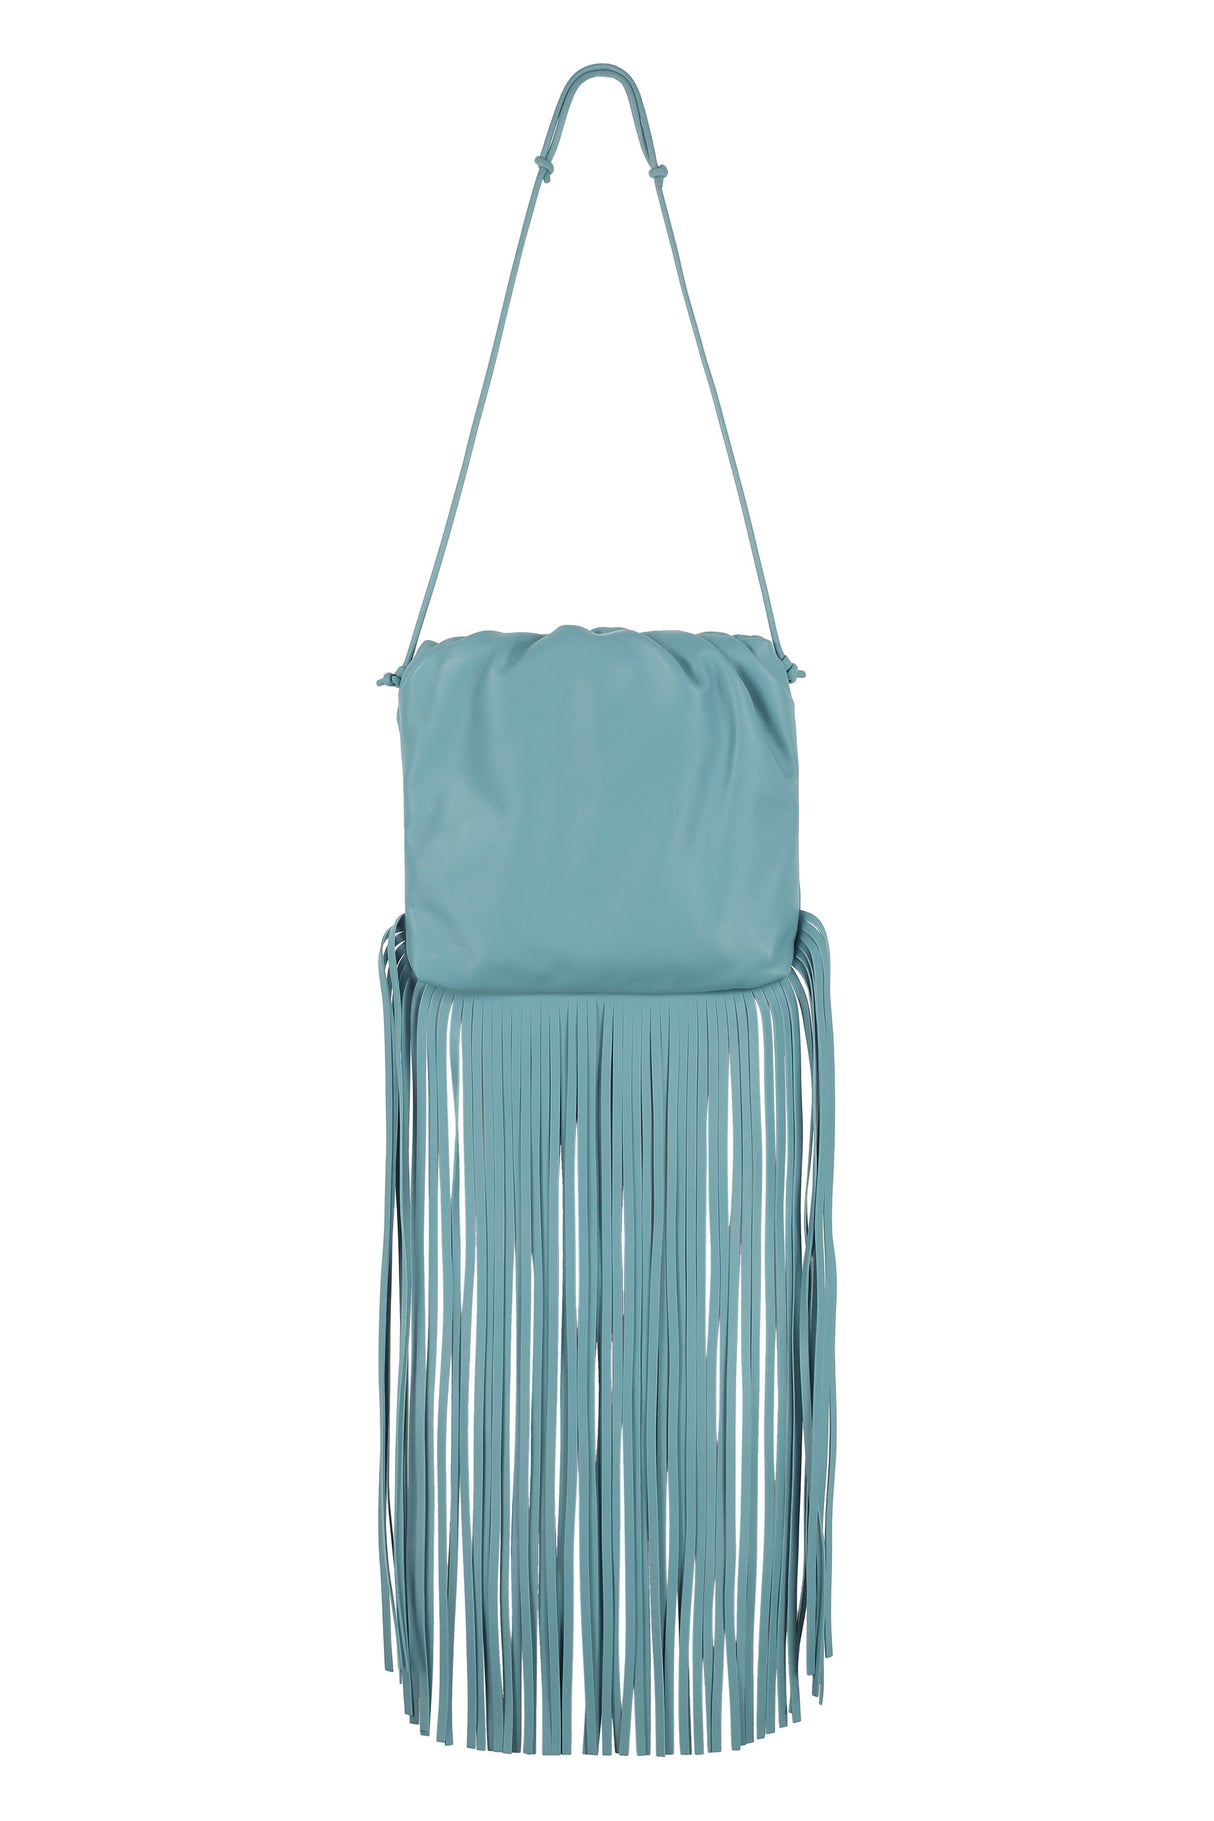 Túi xách đeo vai da xanh cho phụ nữ - Bộ sưu tập mùa thu đông 2020